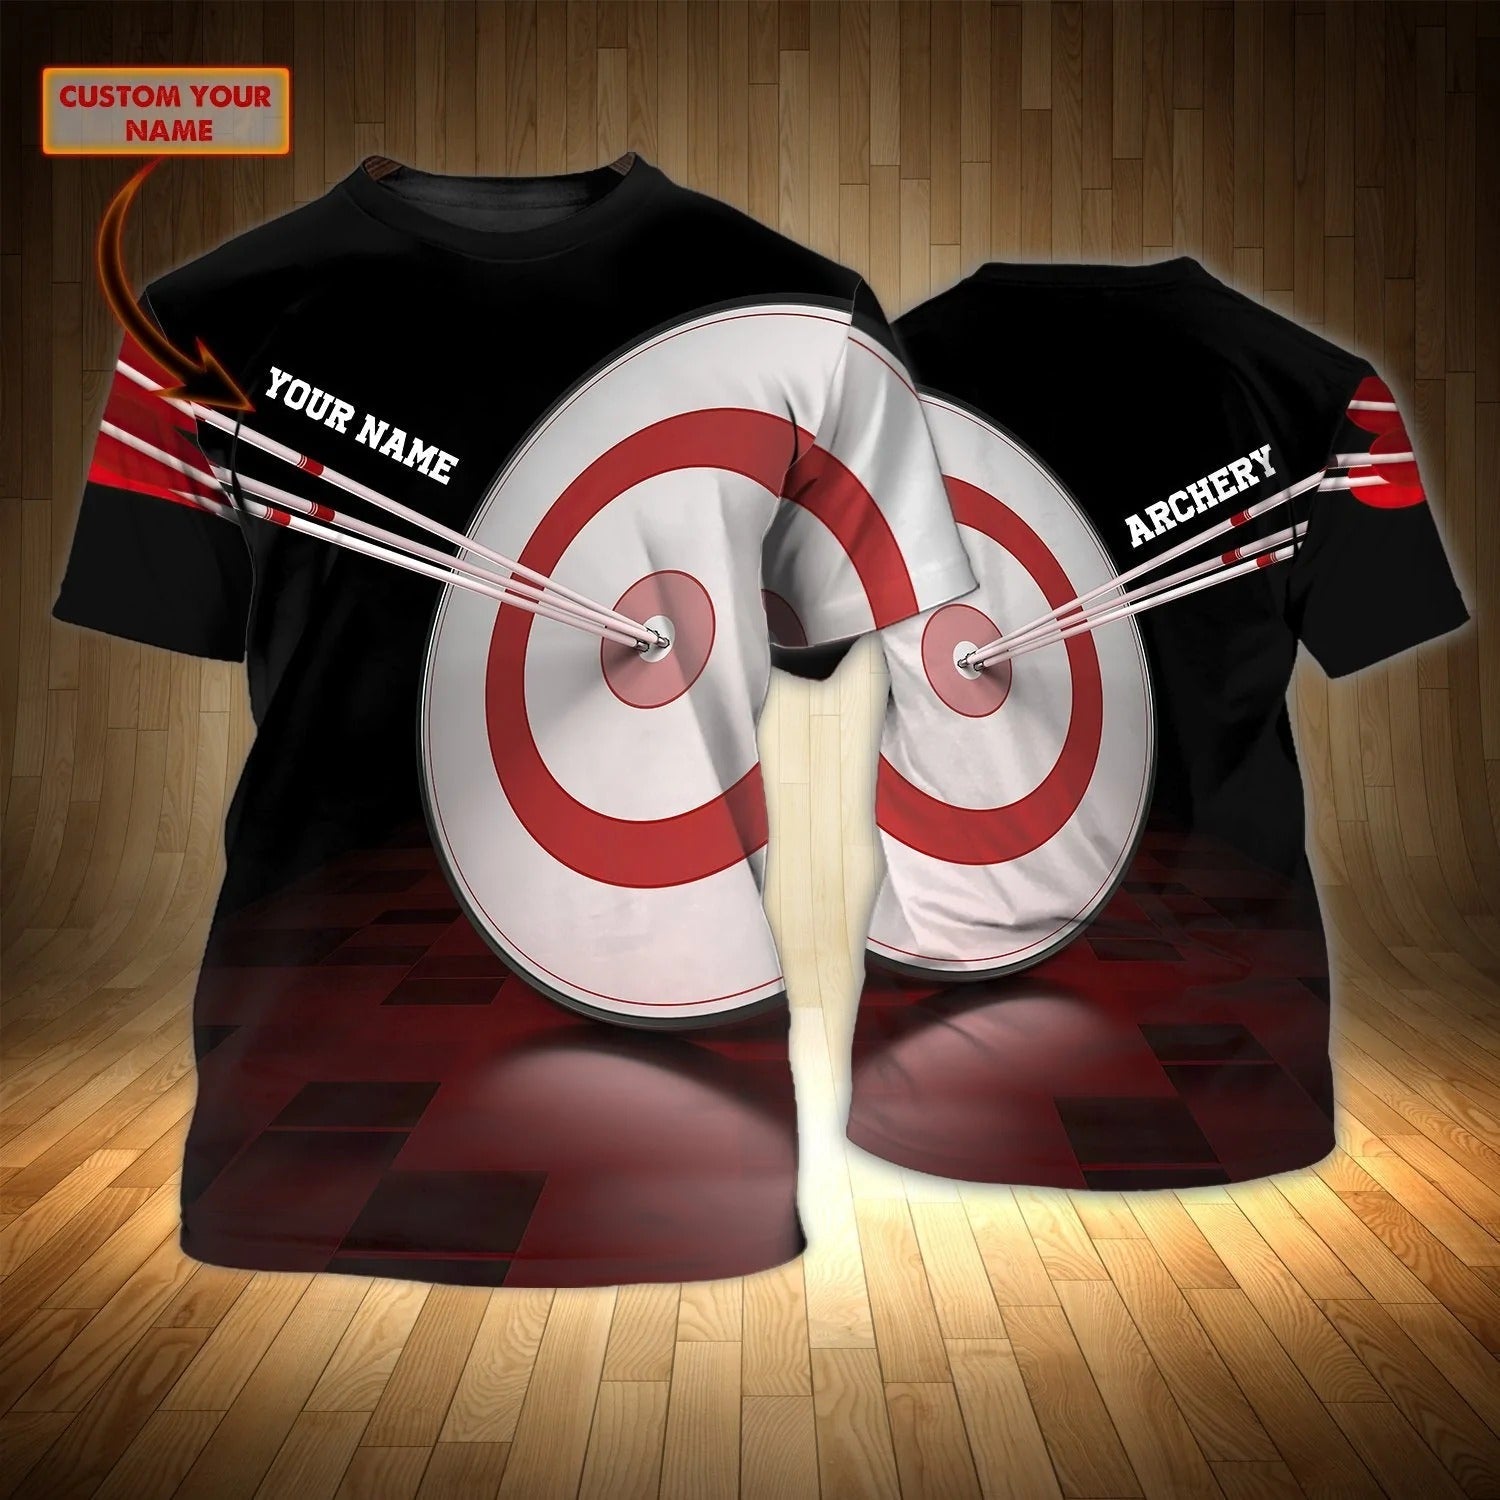 Customized 3D Archery Shirt Unisex Men Women Archery Shirt Gift For An Archery Player Coolspod